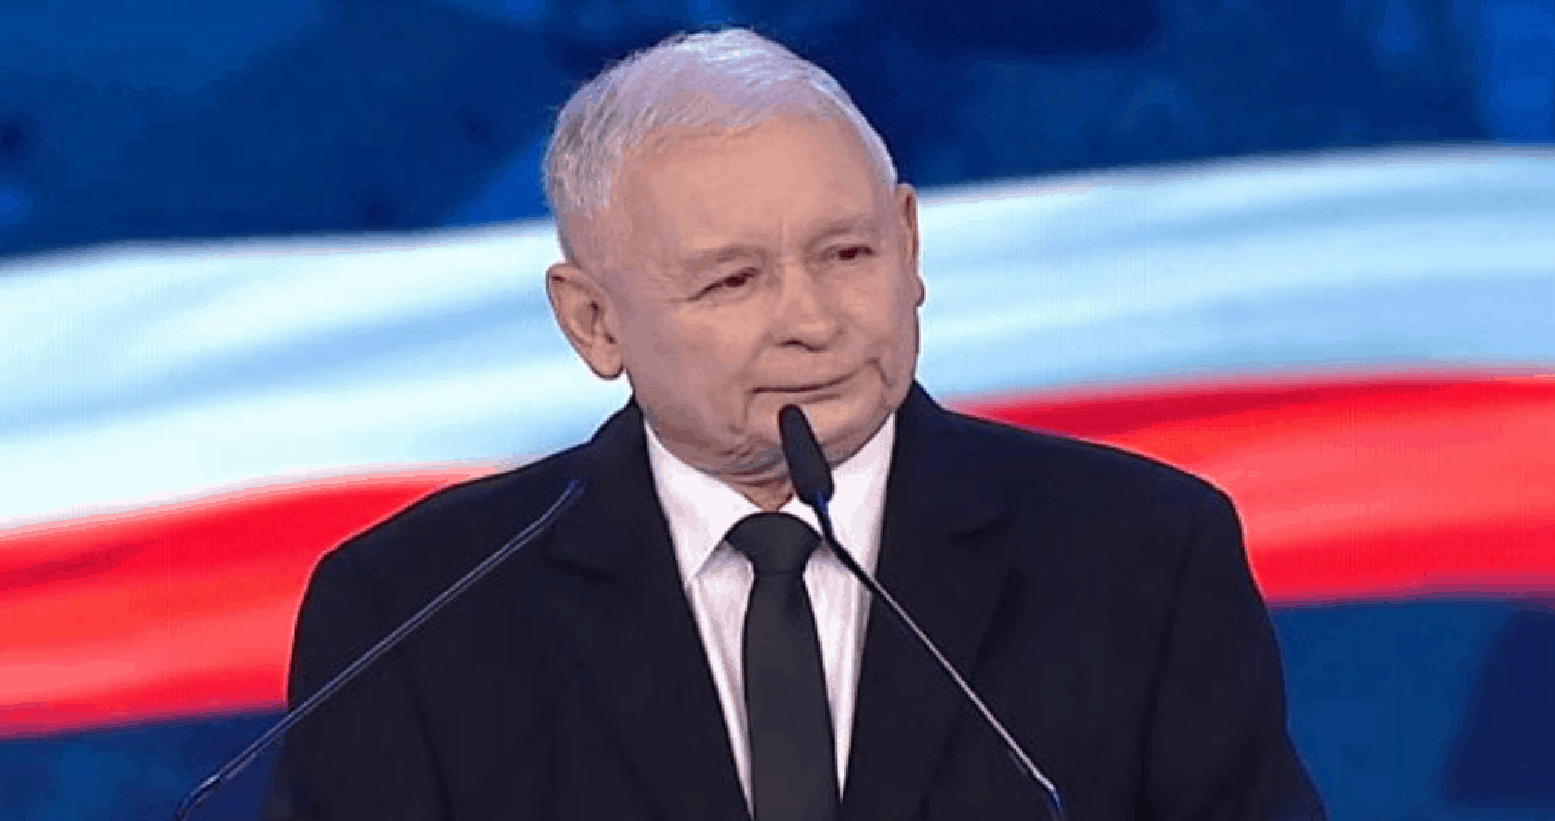 101 lat temu połączone zostały dwie sprawy myśl i czyn powiedział Jarosław Kaczyński w swoim przemówieniu z okazji 101 rocznica odzyskania niepodległości.